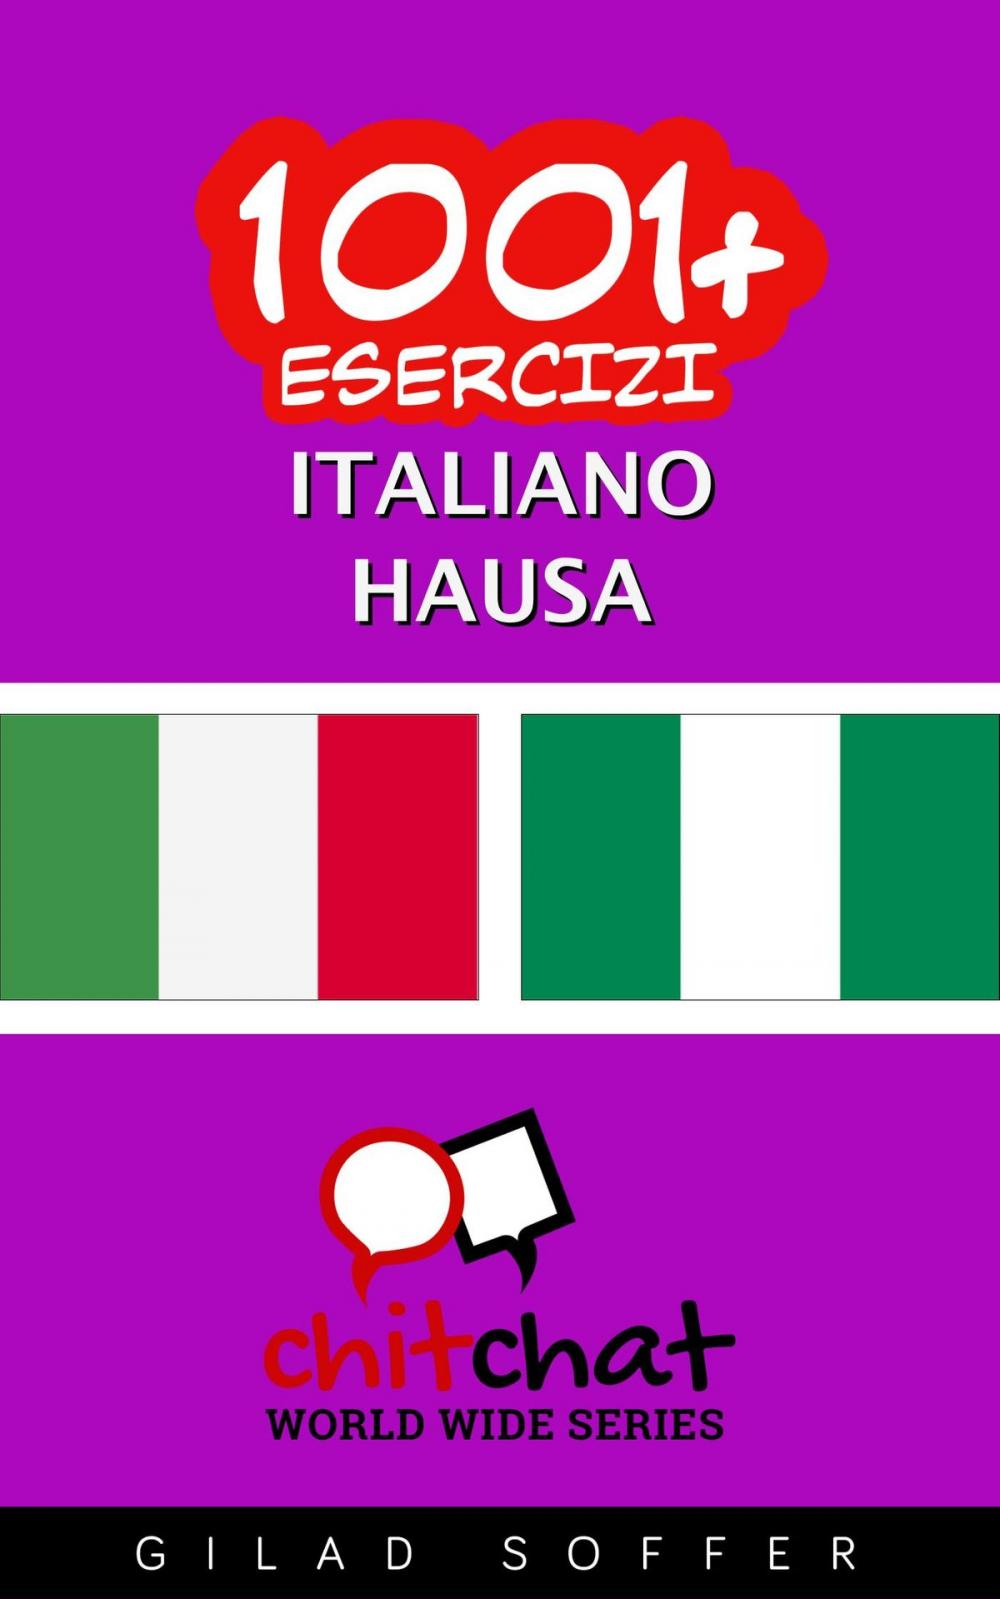 Big bigCover of 1001+ Esercizi Italiano - Hausa